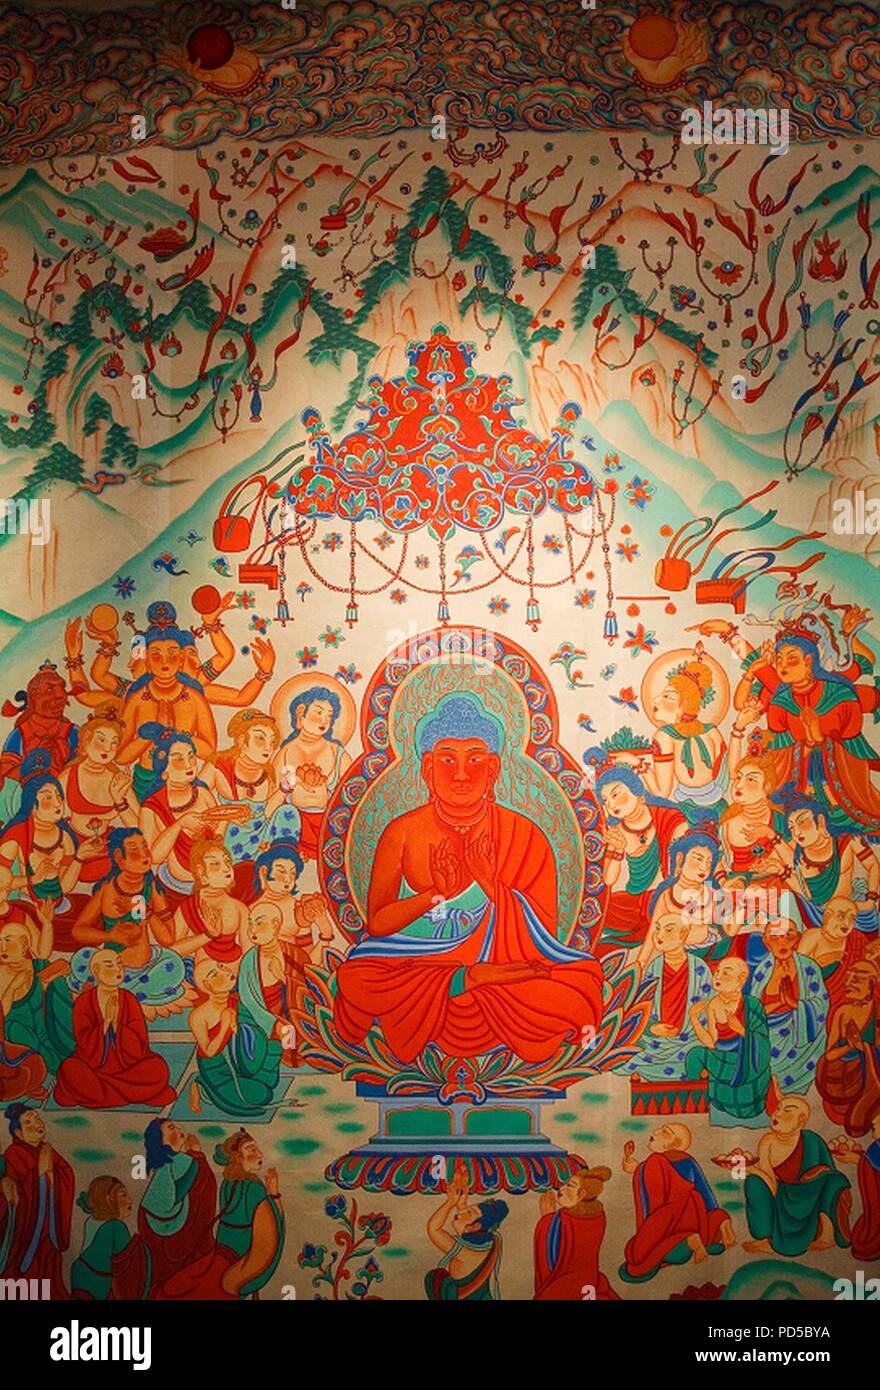 Amitabha Buddha Sukhavati Dunhuang Mogao Caves. Stock Photo